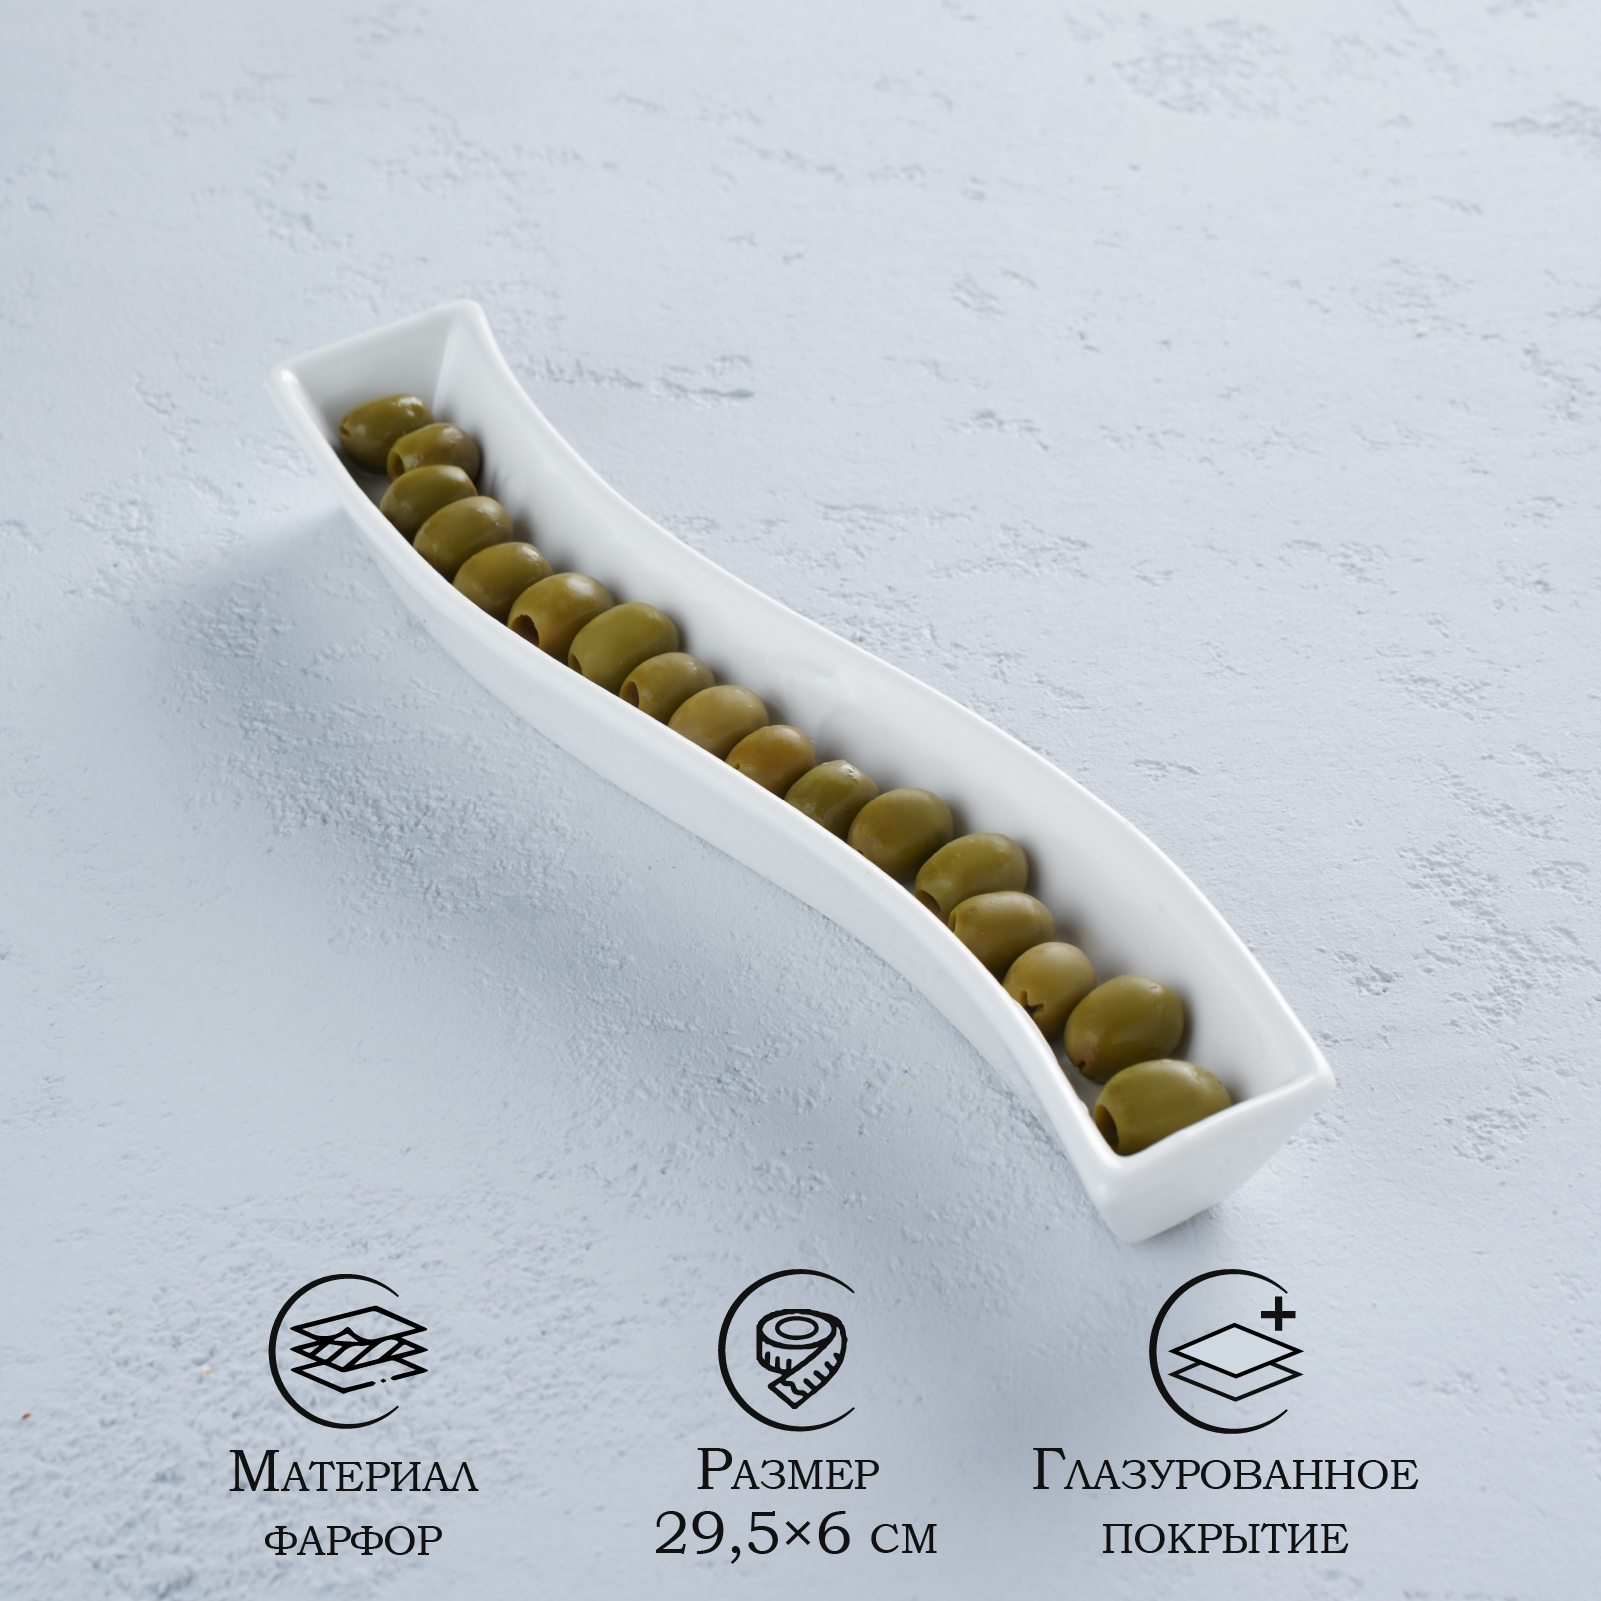 Блюдо фарфоровое для оливок Magistro «Бланш» 295×6 см цвет белый